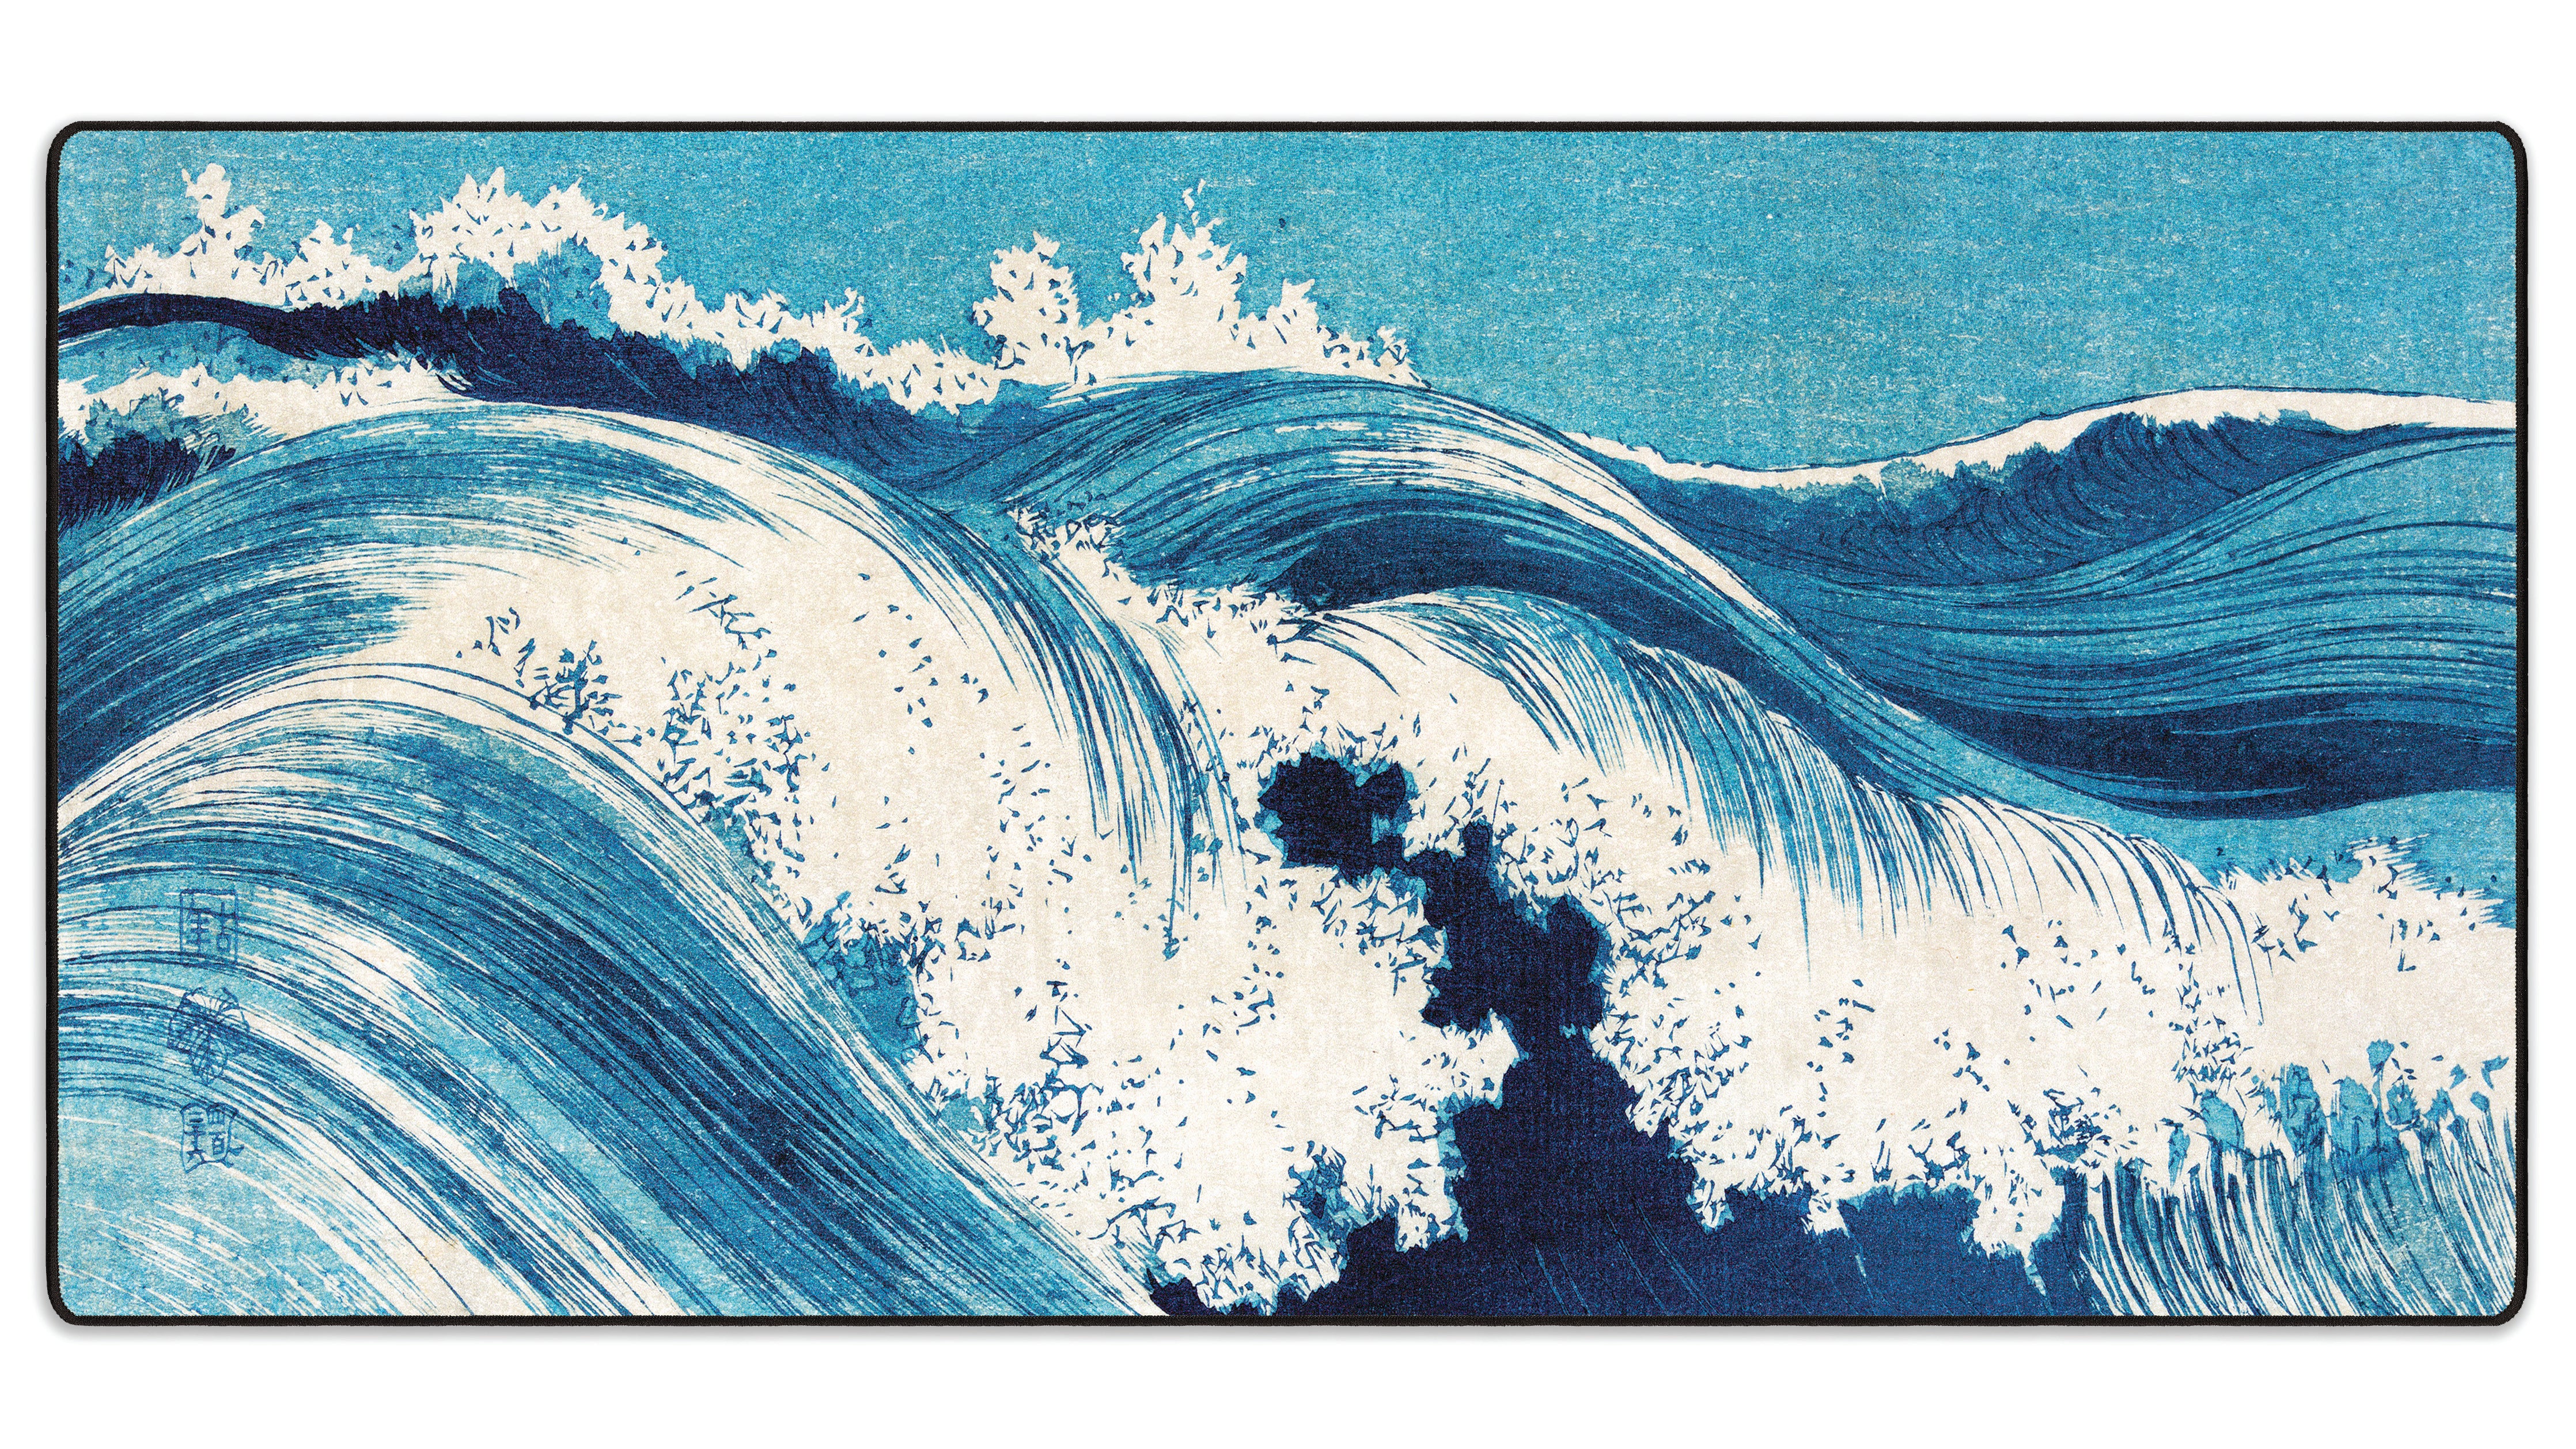 Ocean Waves by Uehara Konen - The Mousepad Company